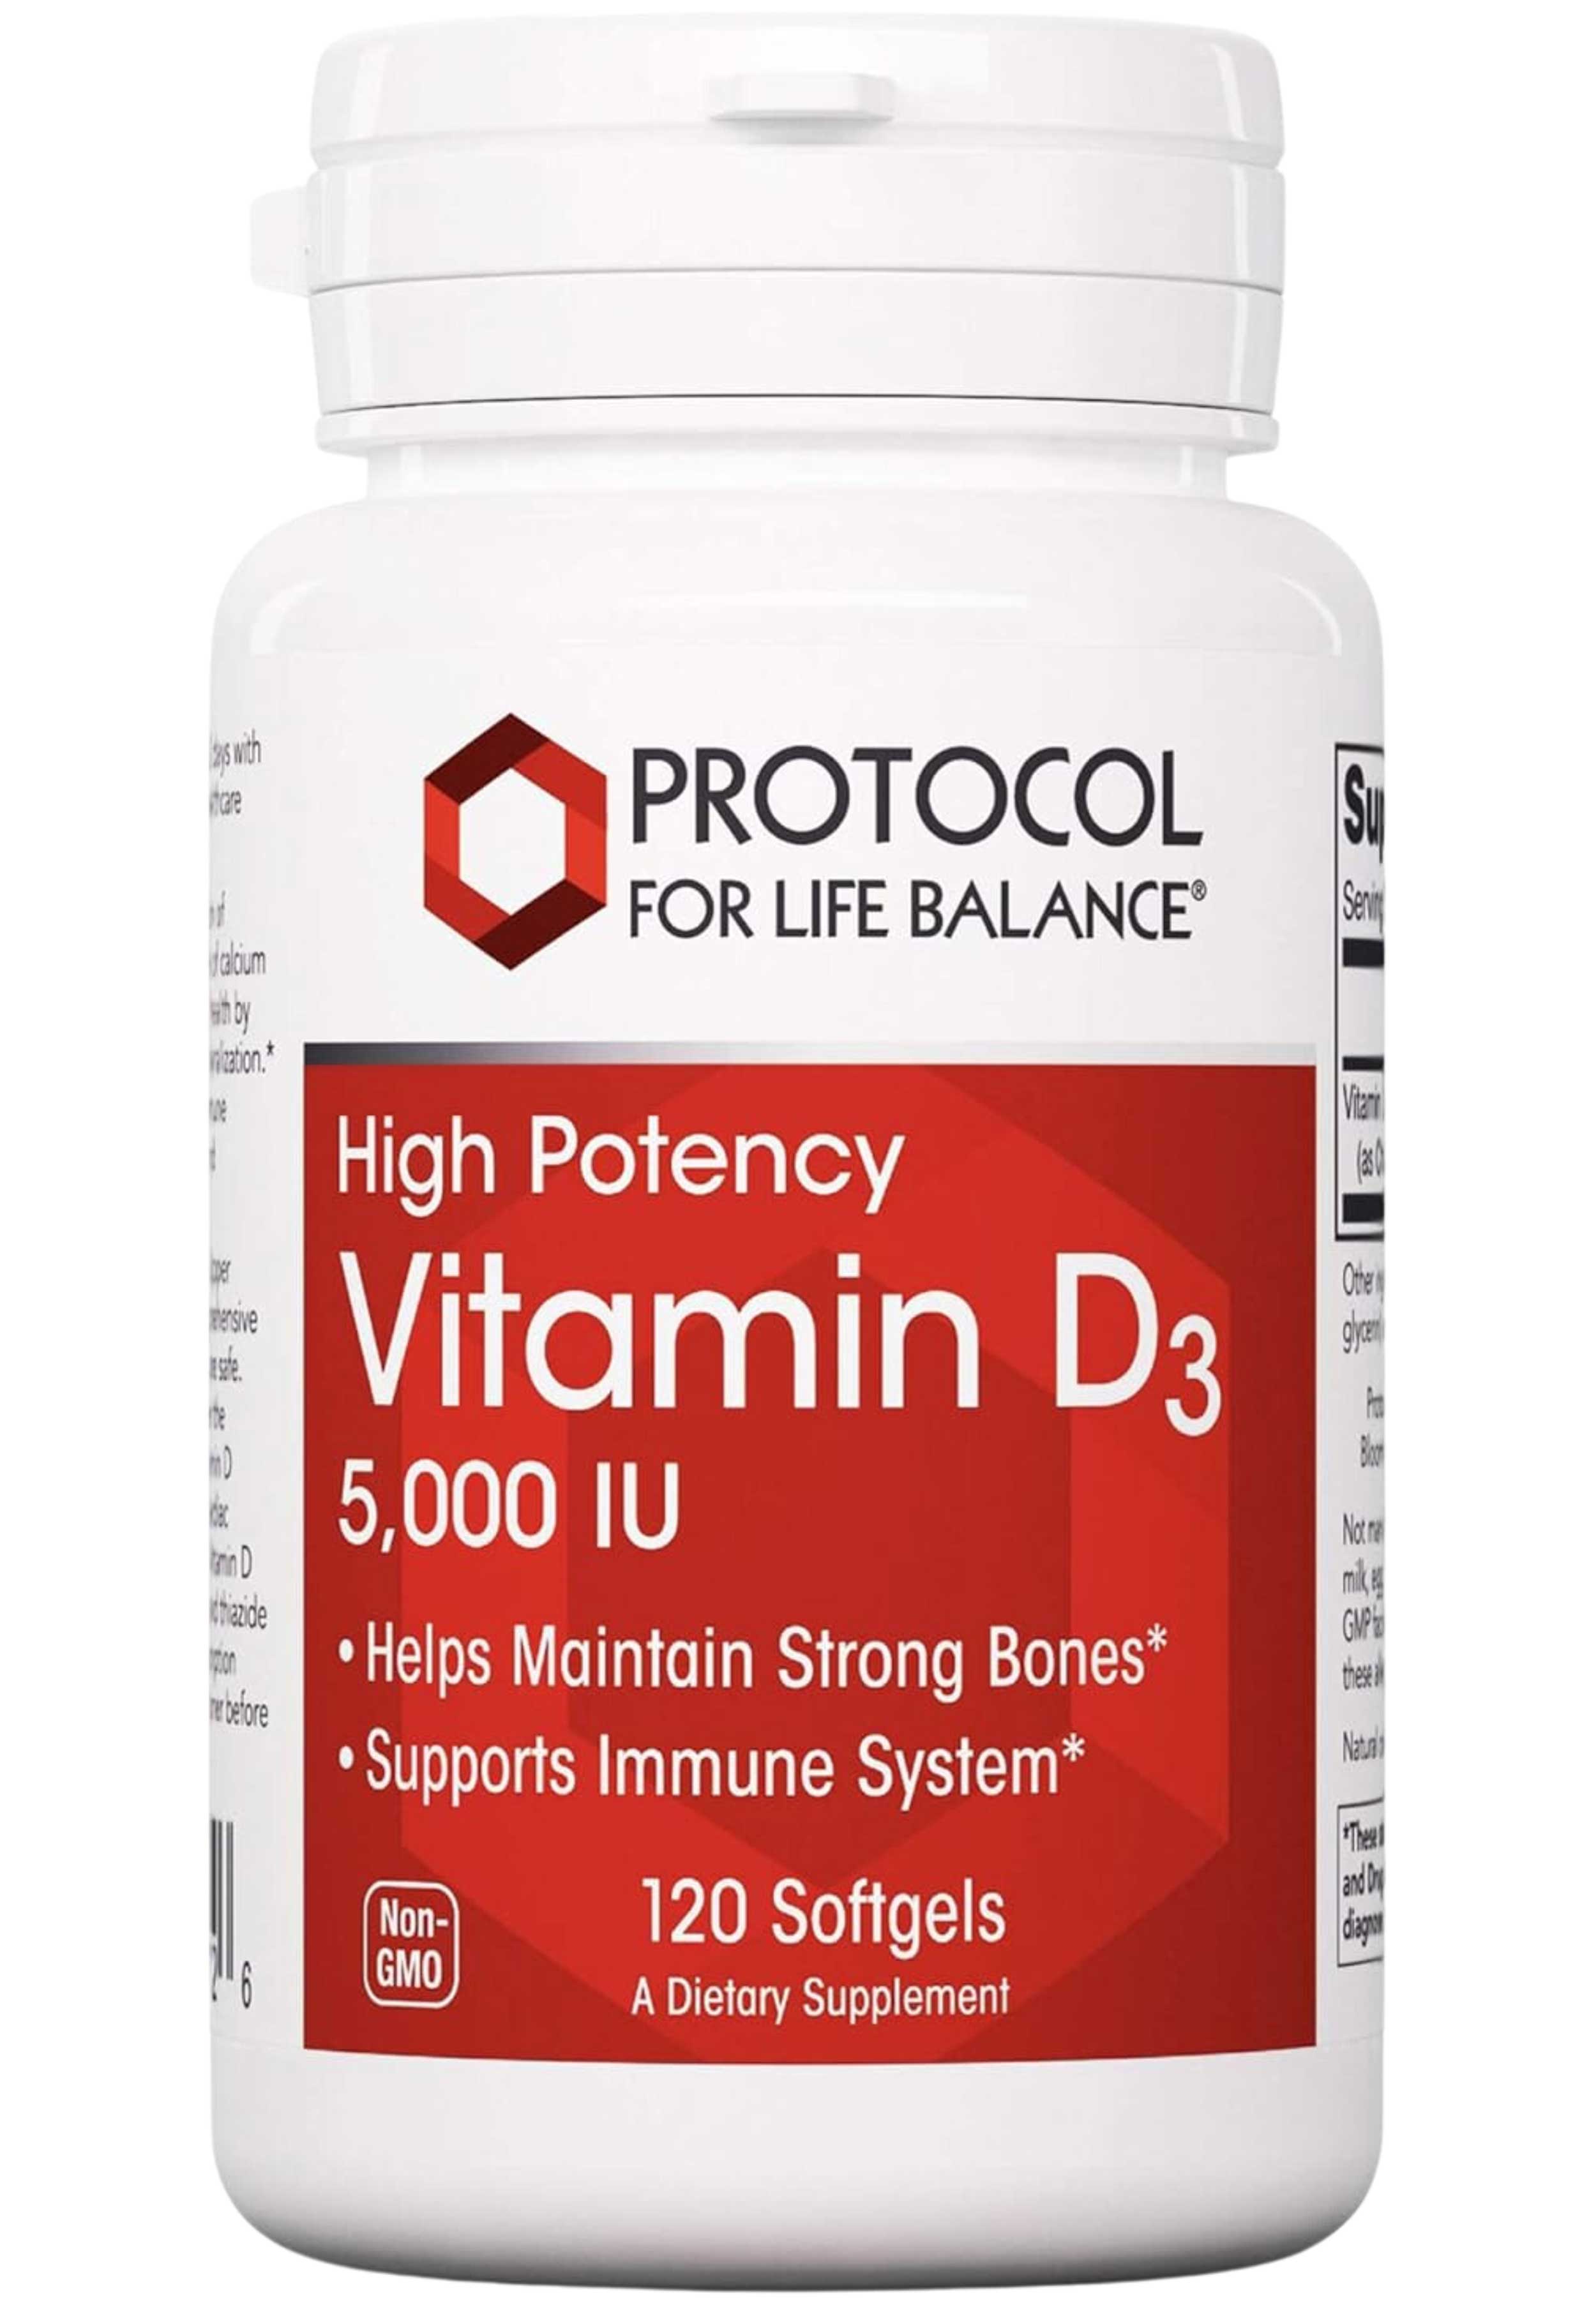 Protocol for Life Balance High Potency Vitamin D3 5,000 IU